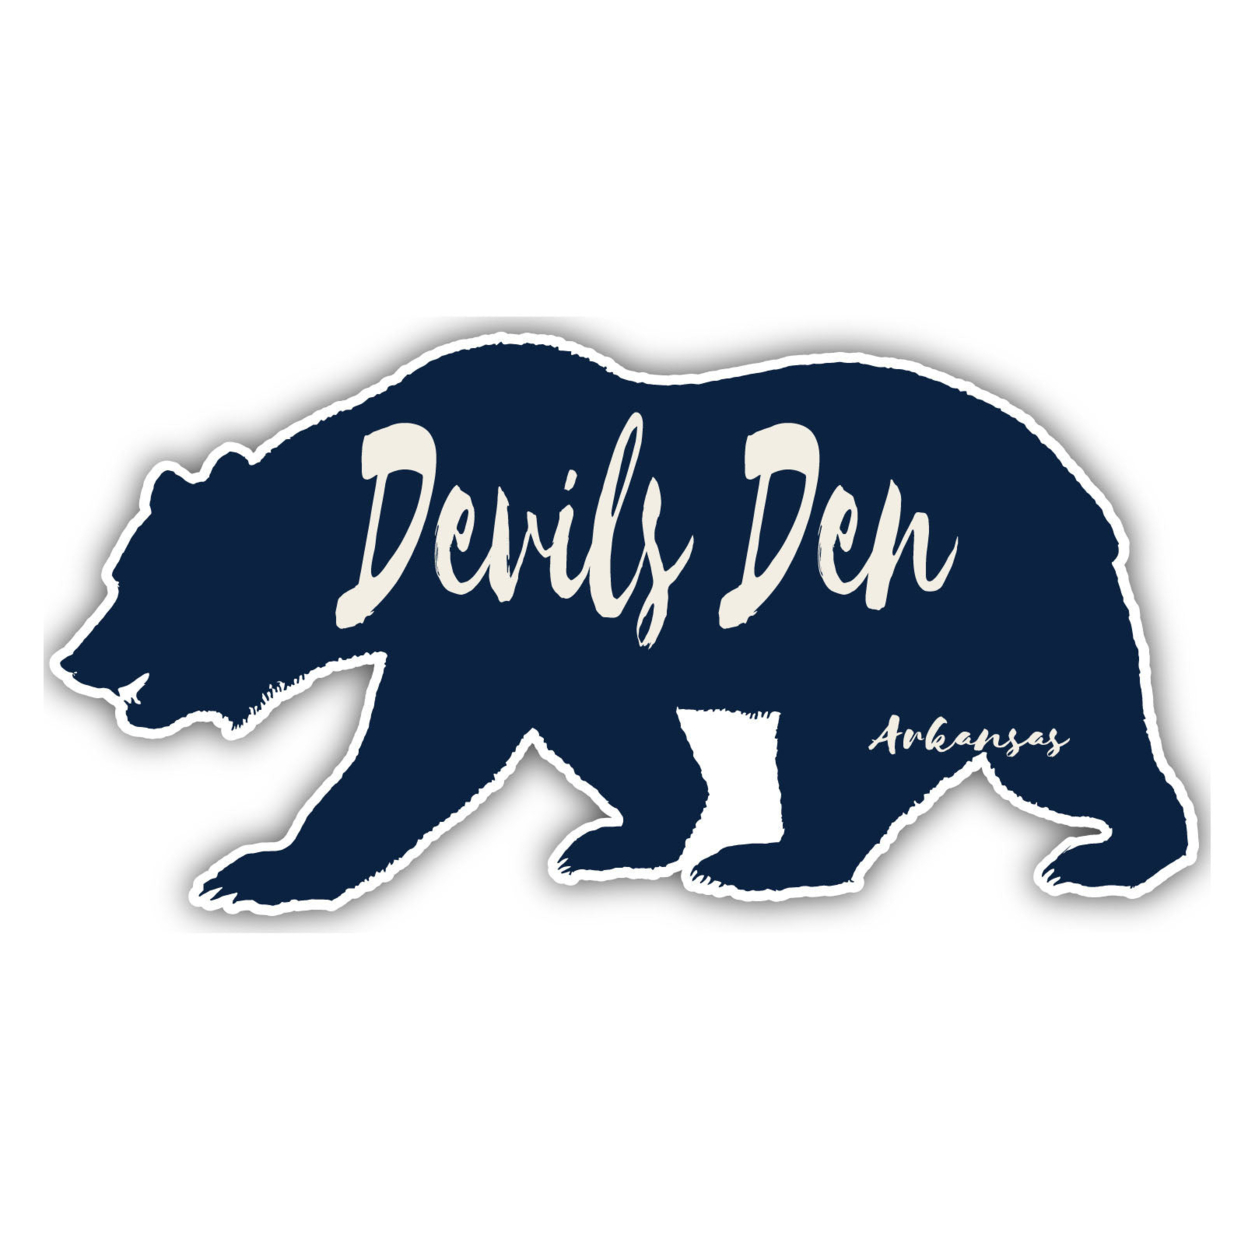 Devils Den Arkansas Souvenir Decorative Stickers (Choose Theme And Size) - 4-Pack, 10-Inch, Bear